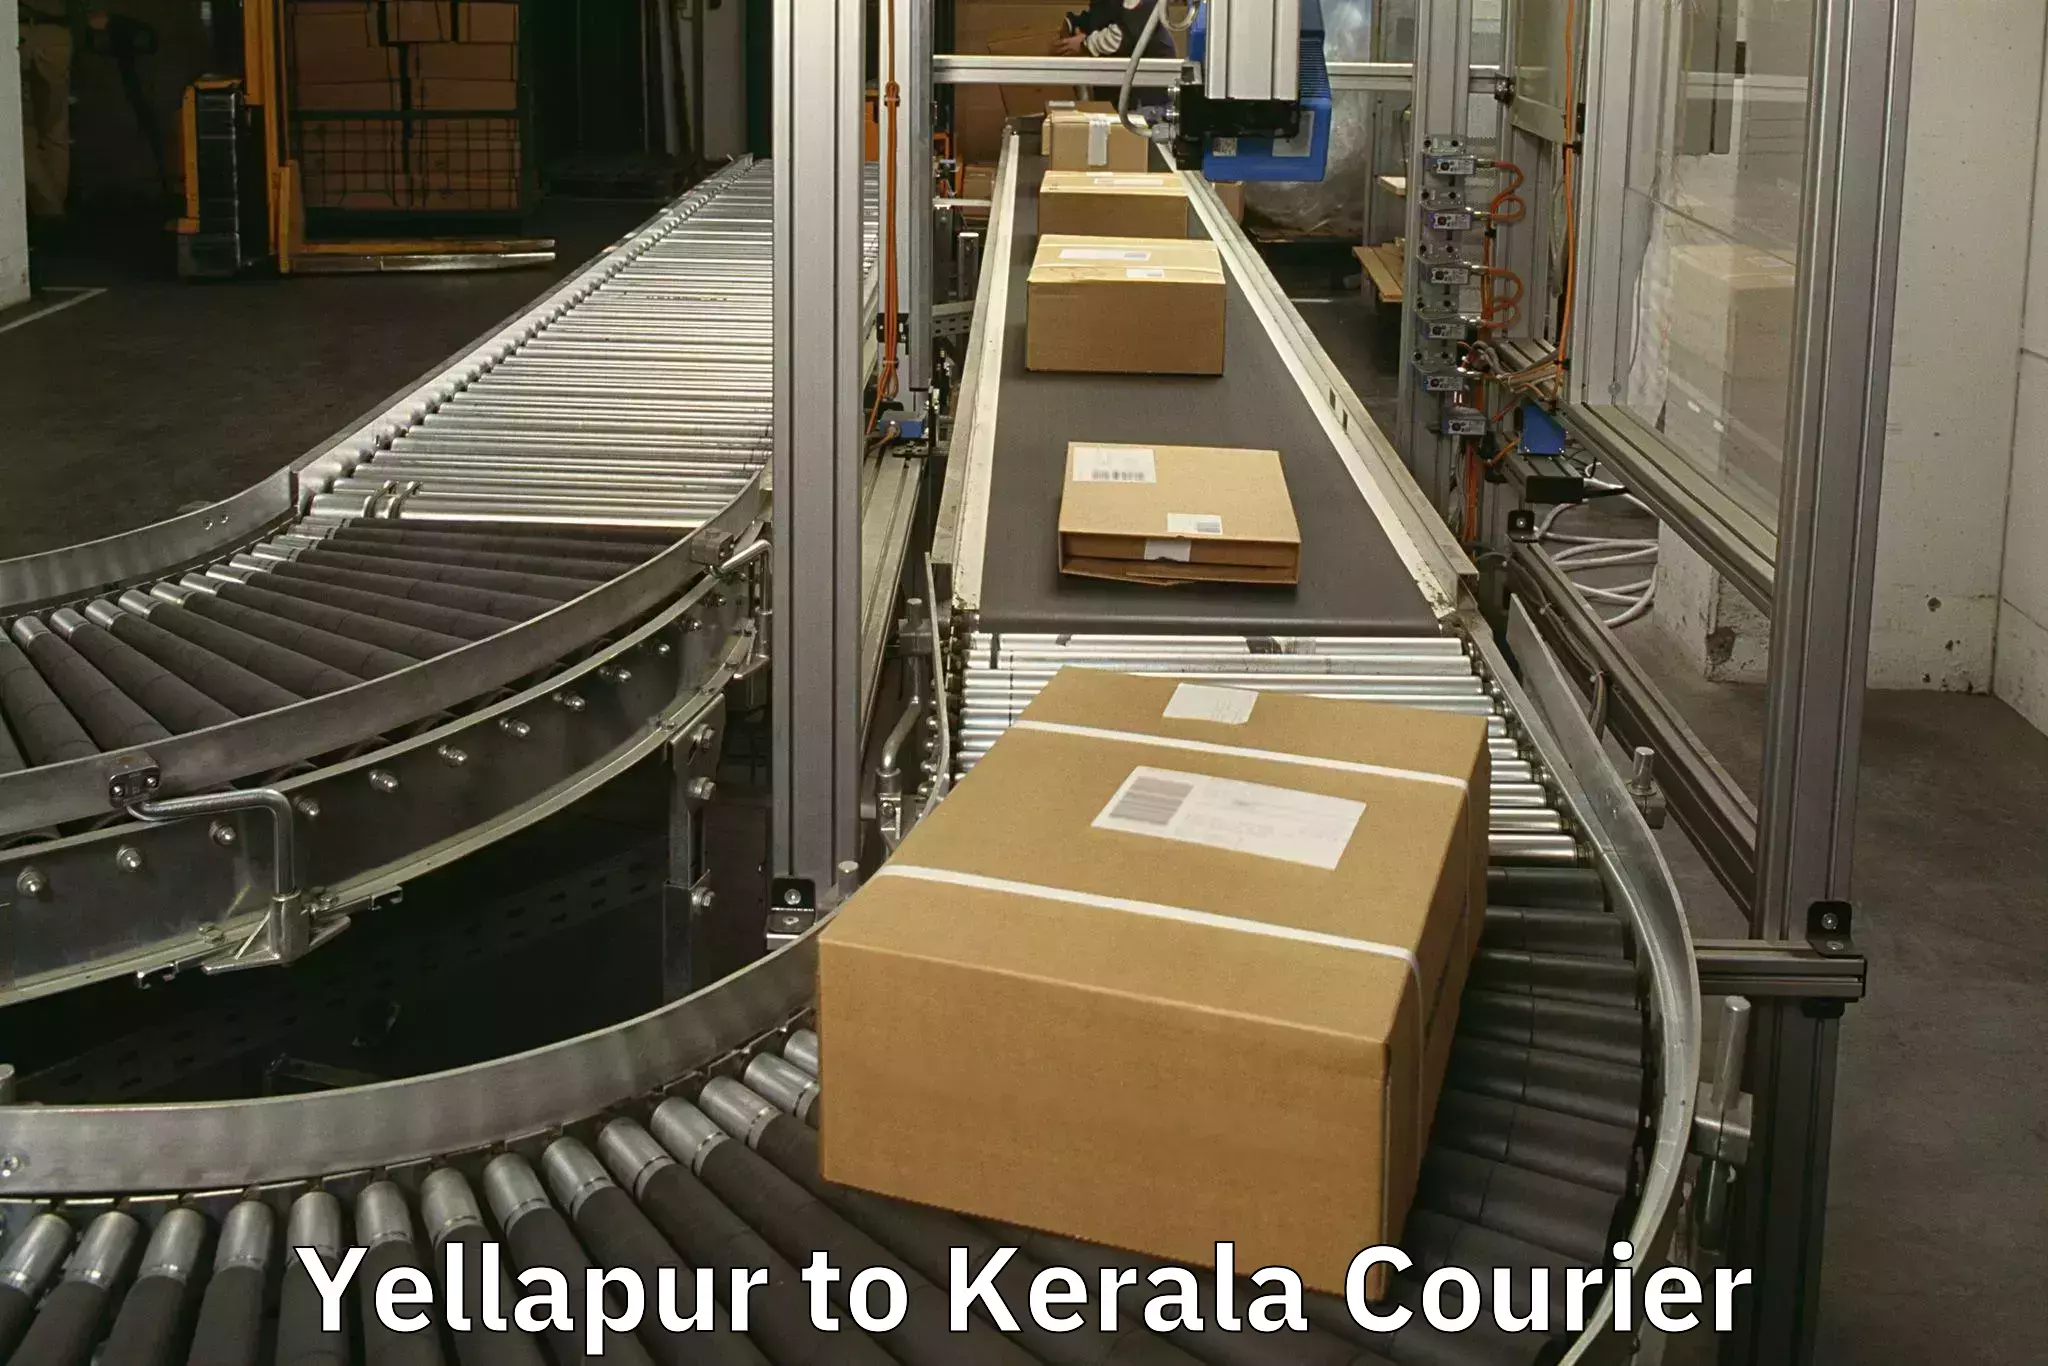 Luggage delivery system Yellapur to Manjeshwar